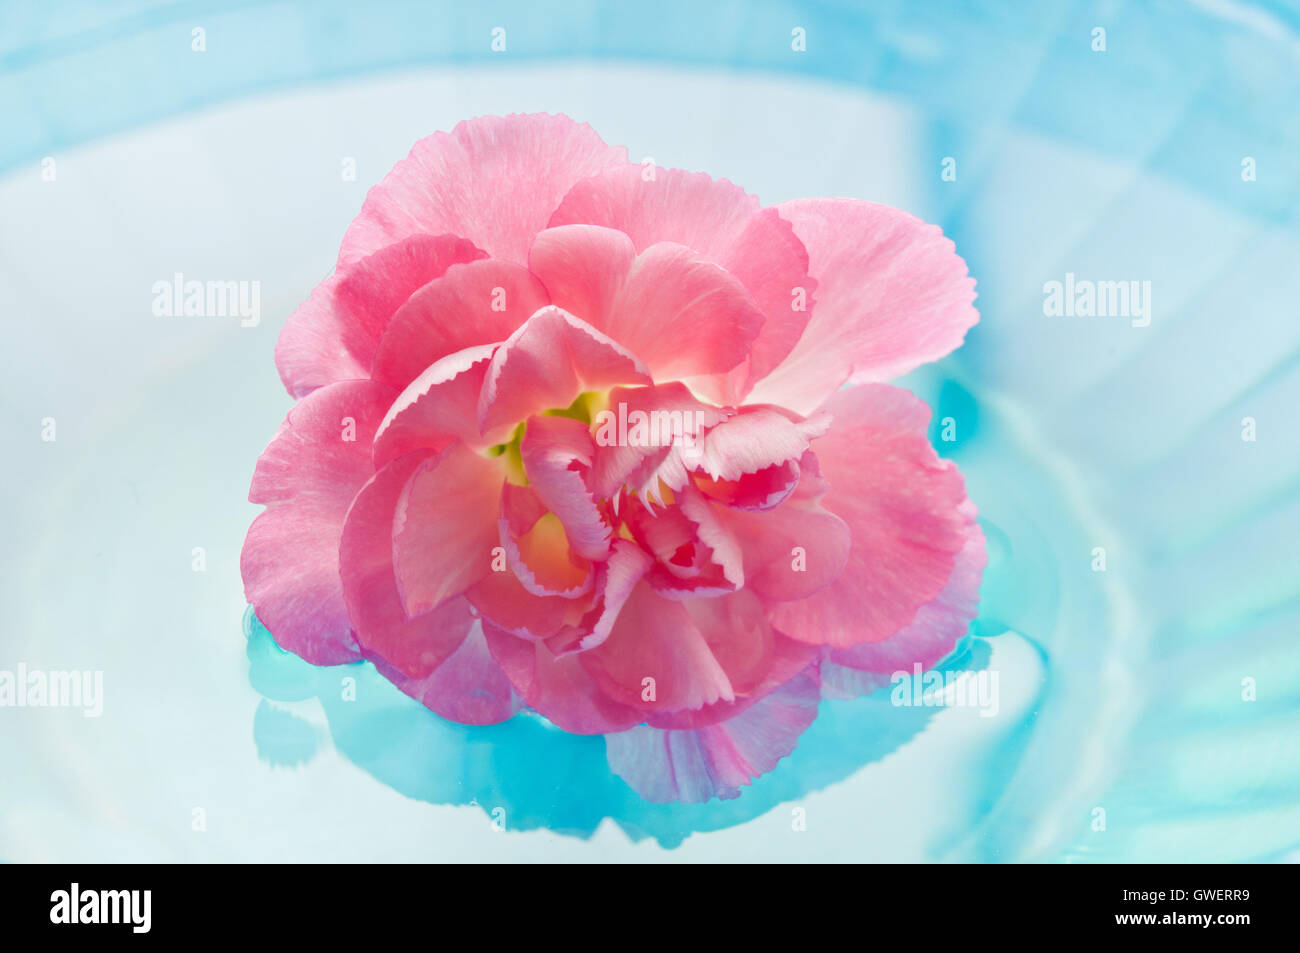 Fleur oeillet rose dans l'eau, la méditation et la pleine conscience Banque D'Images